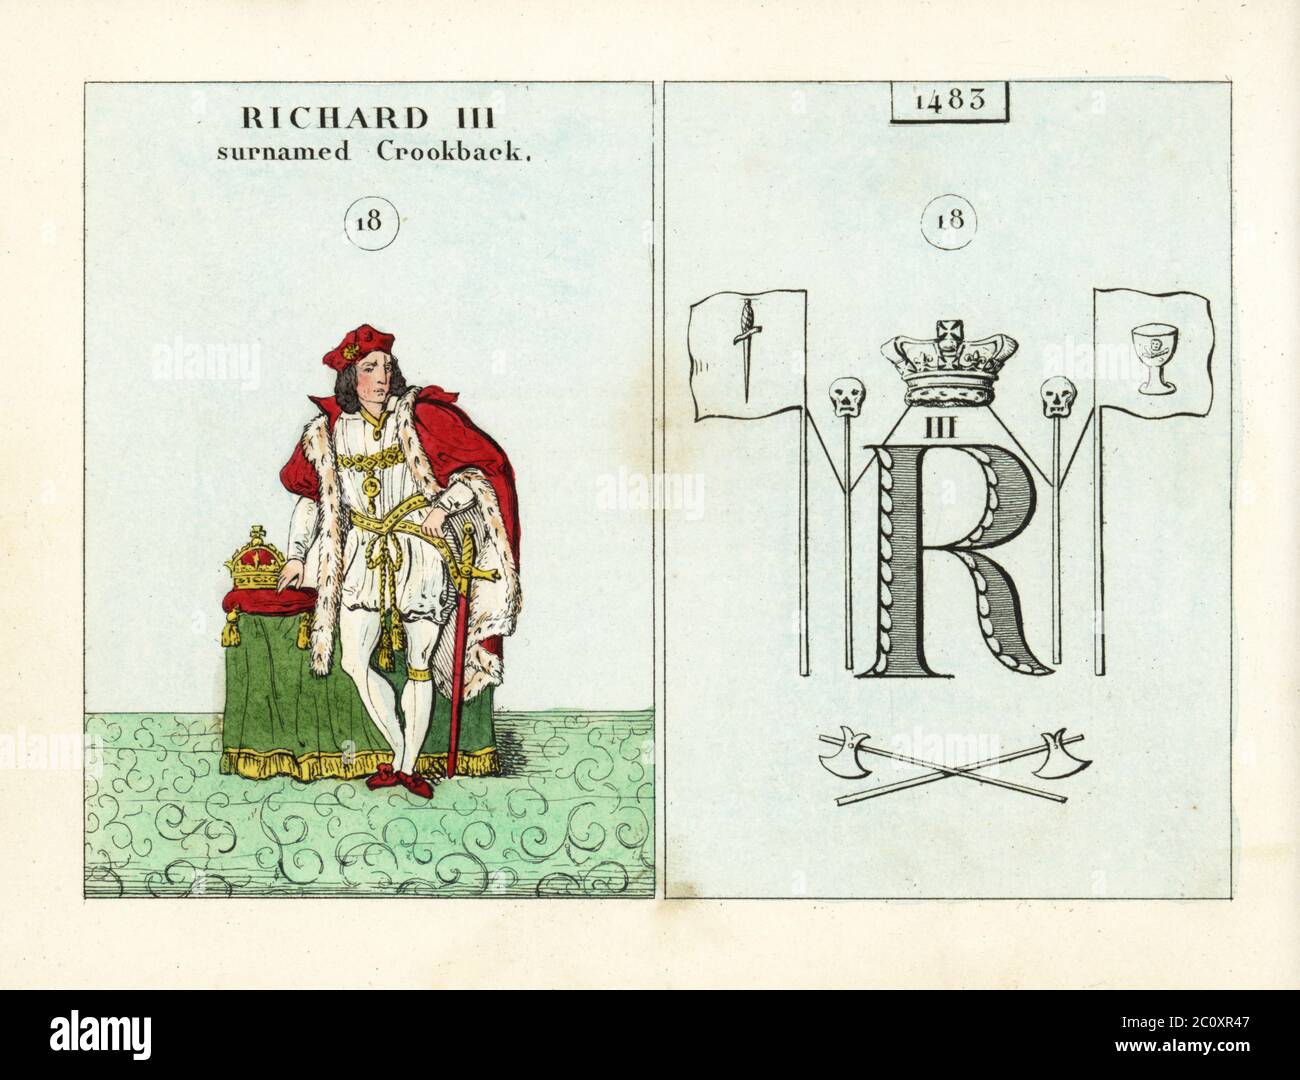 Ritratto di Re Richard III d'Inghilterra, soprannominato Crookback. Con cappuccio, mantello erminio, spada e corona. Emblema indica assassini che sostengono la corona. Incisione in acciaio colorato a mano dopo un'illustrazione di Mary Ann Rundall da UNA storia simbolica dell'Inghilterra, dai primi tempi al Regno di Guglielmo IV, J.H. Trucy, Parigi, 1839. Mary Ann Rundall era un insegnante di giovani Signore a Bath, e pubblicò il suo libro di emblemi mnemonici nel 1815. Foto Stock